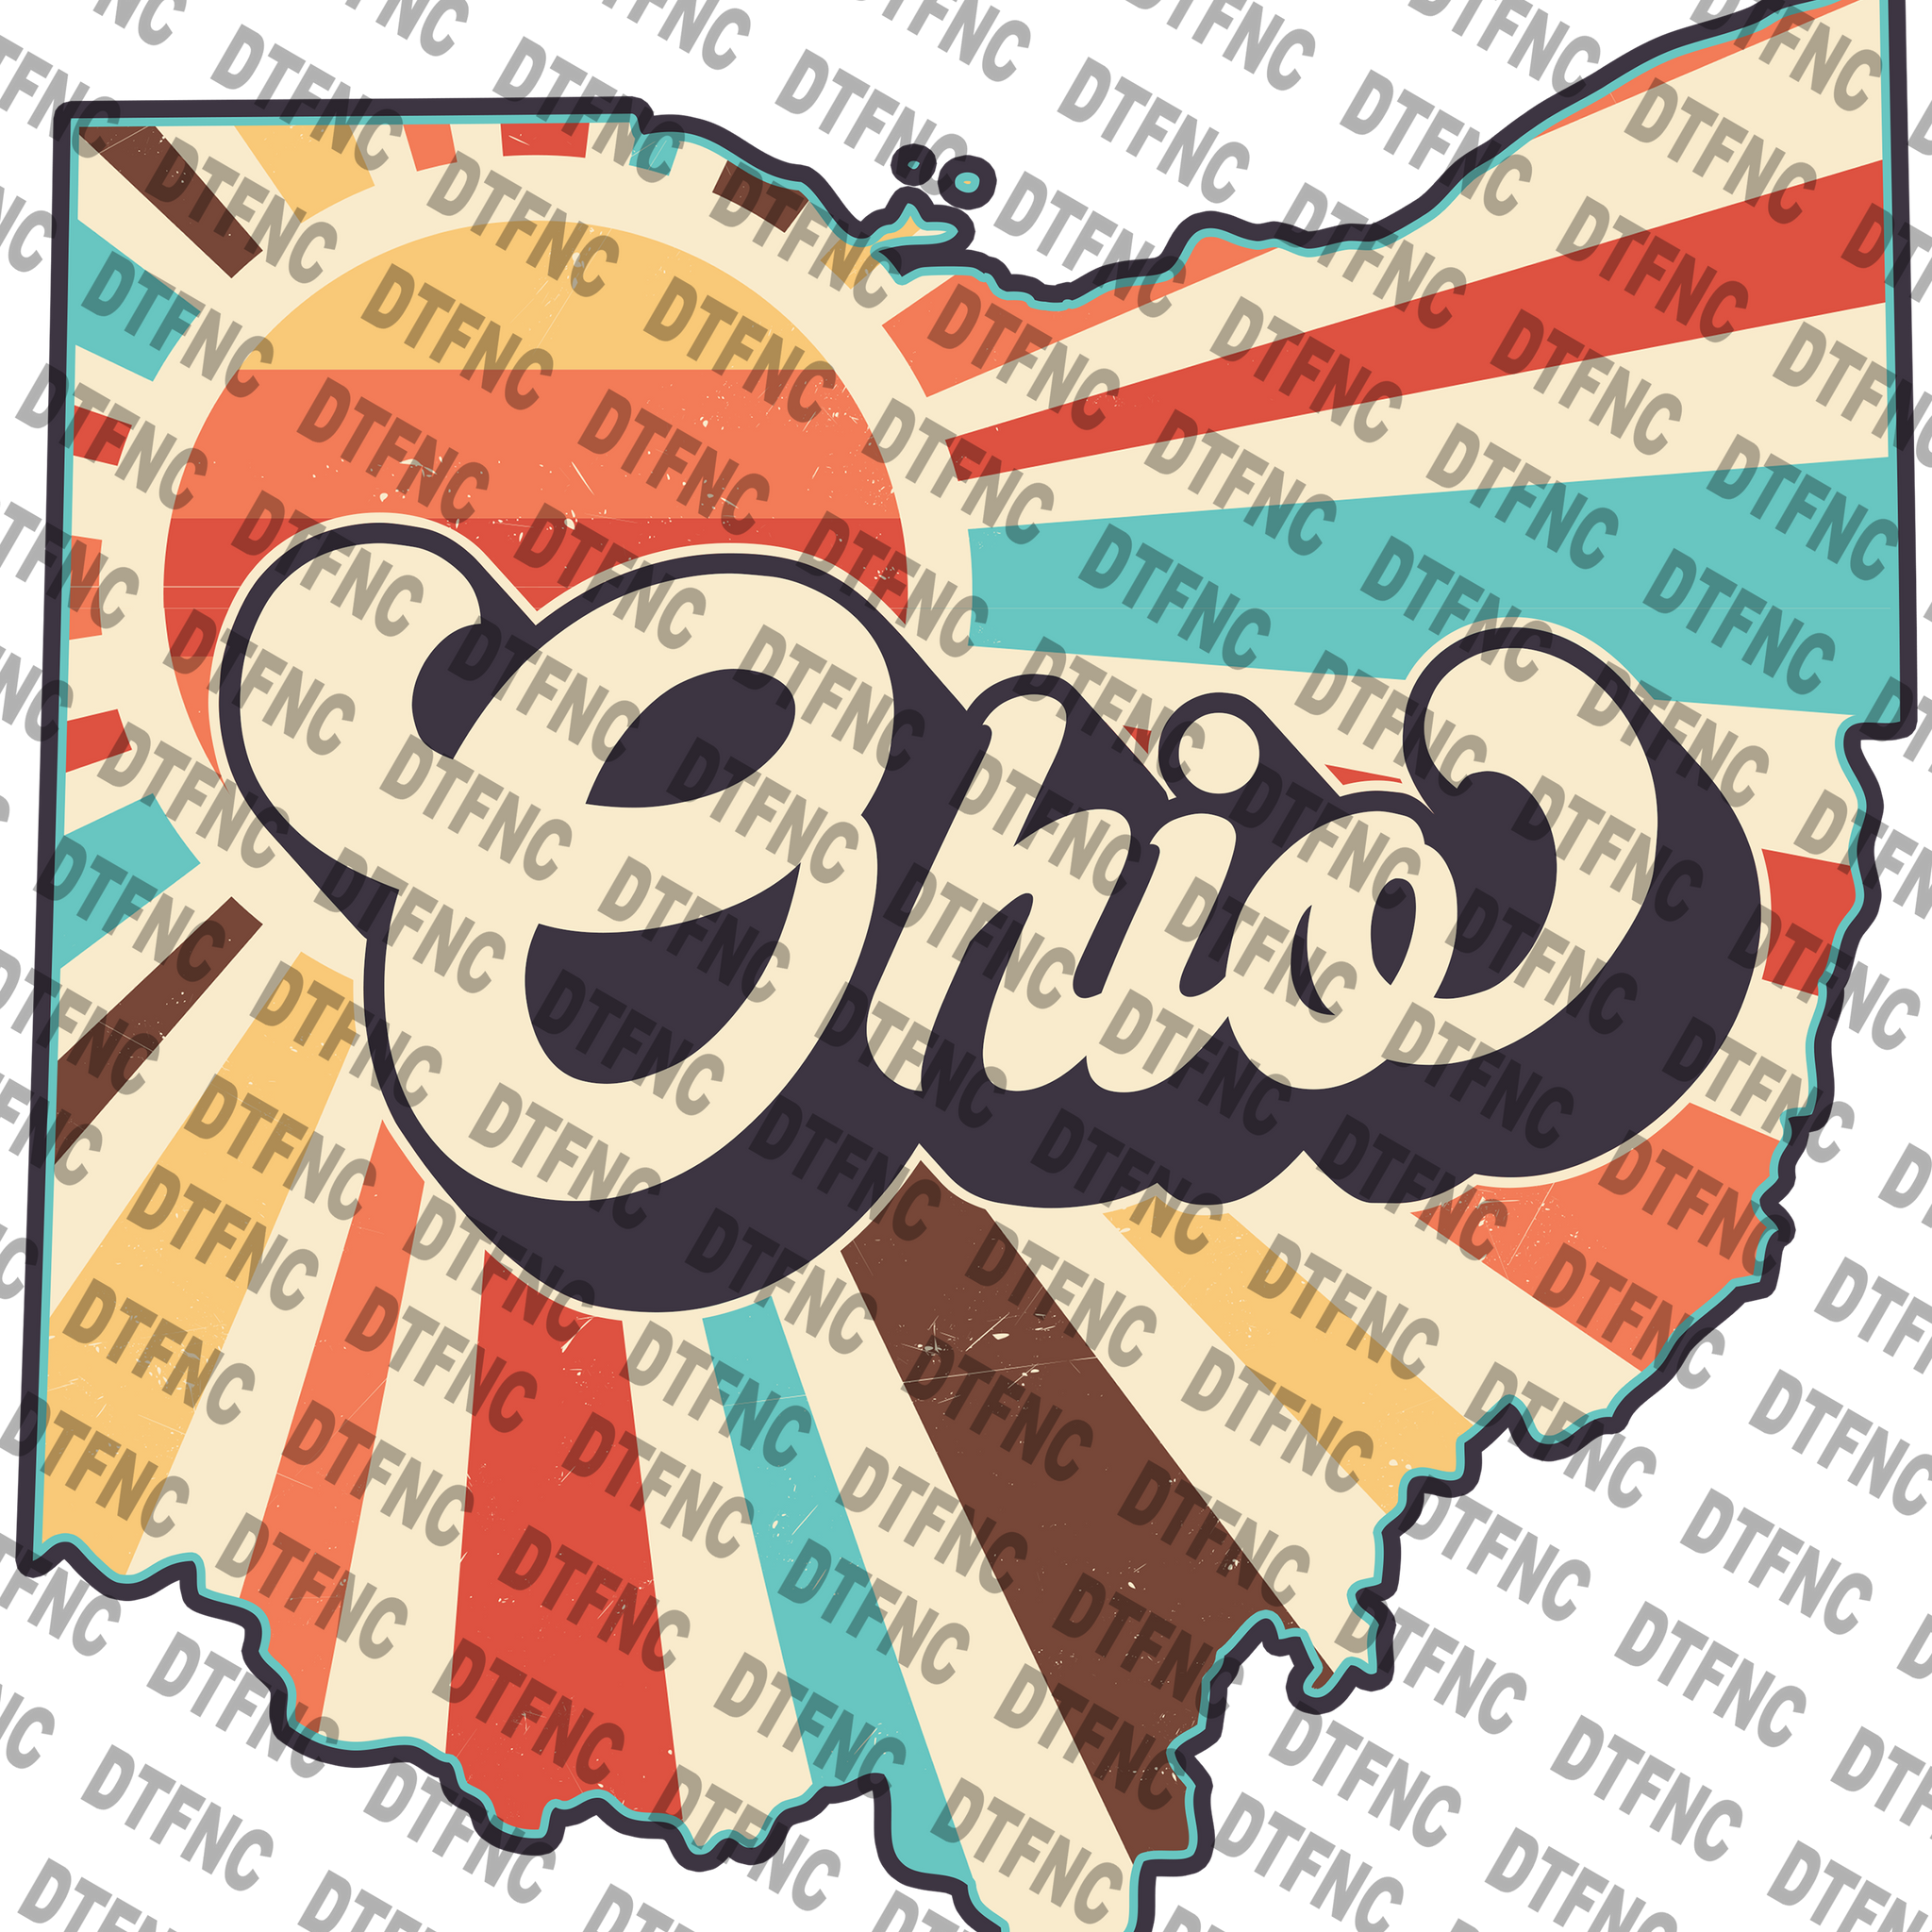 State - Ohio